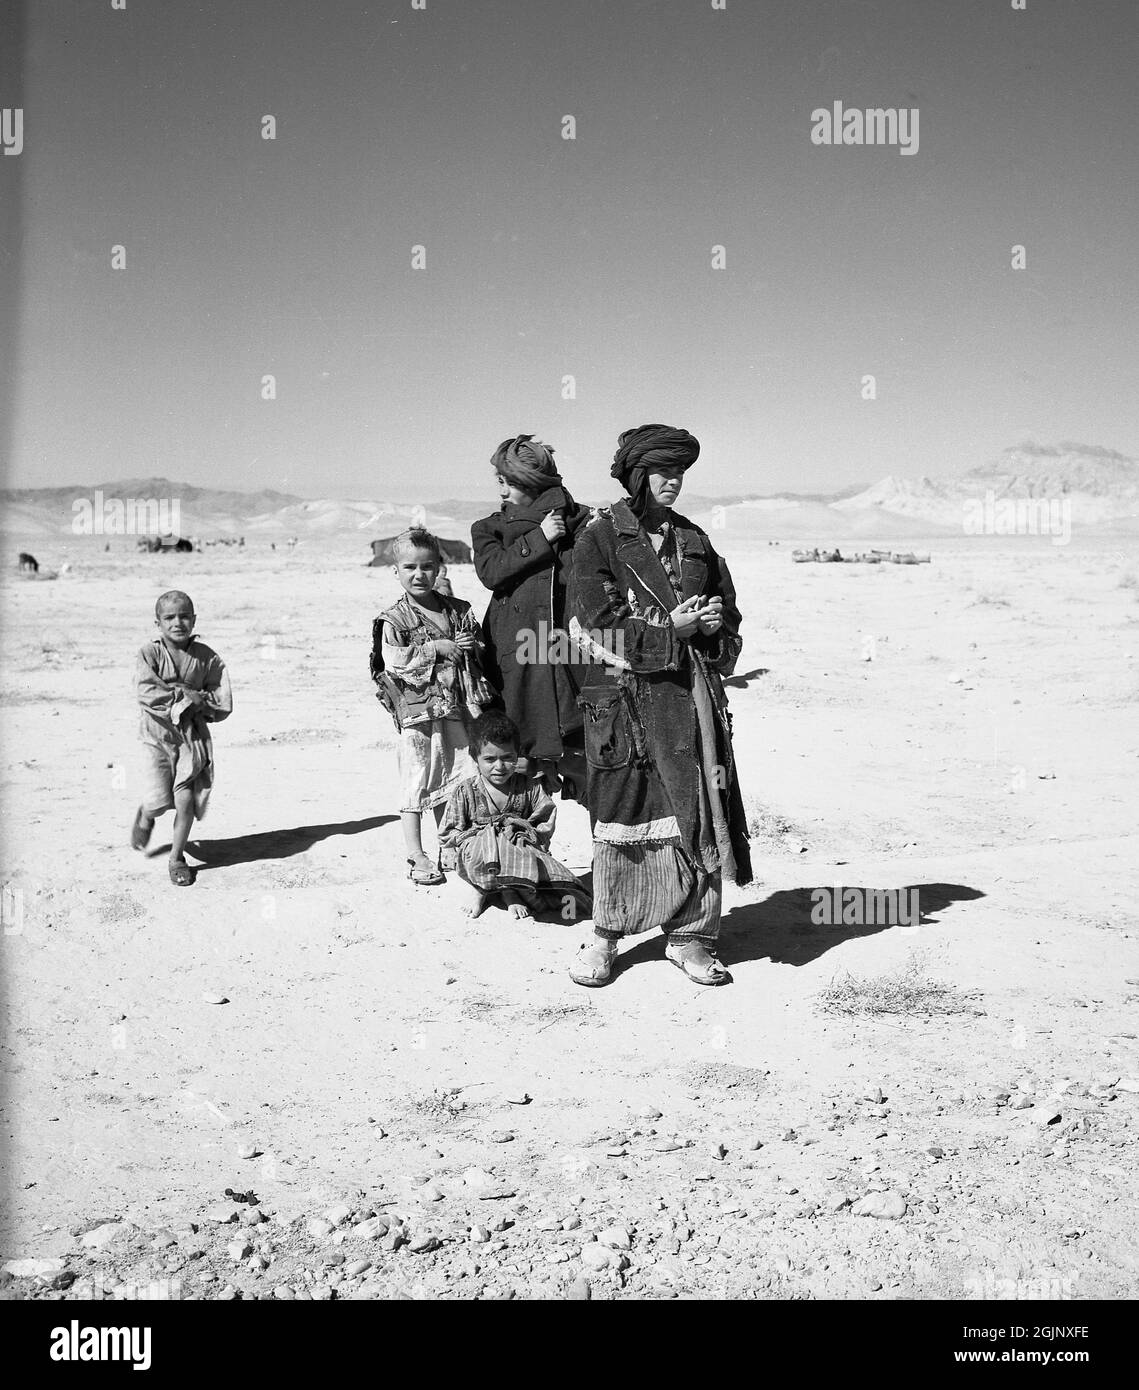 Années 1950, historique, deux jeunes hommes afghans nomades portant des turbans et des vêtements déchiquetés debout avec de petits enfants dans le désert aride et stérile d'Afghanistan. Banque D'Images